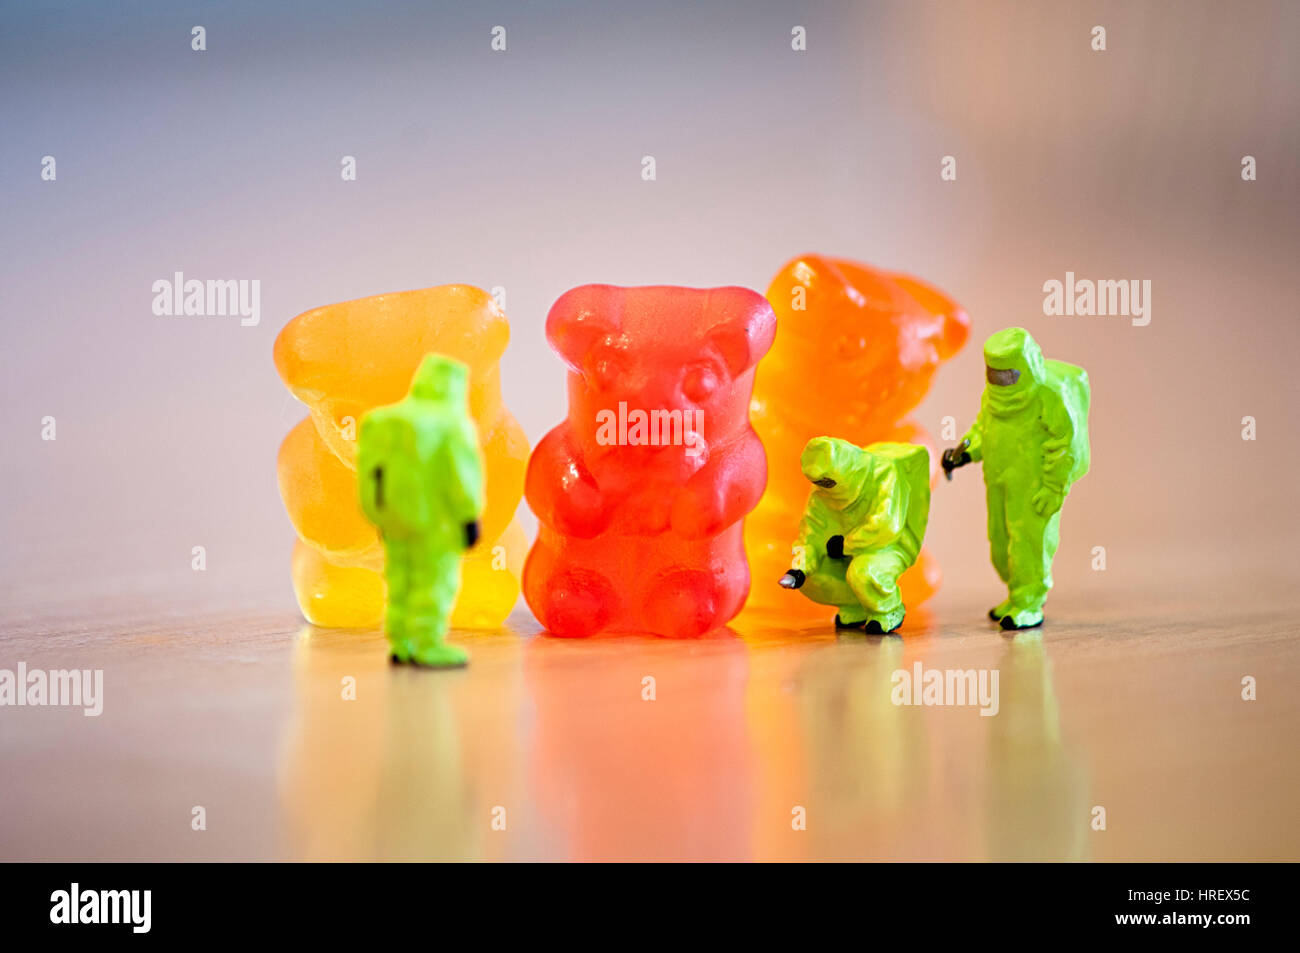 Groupe des ours de Gummi. Concept alimentaire Banque D'Images